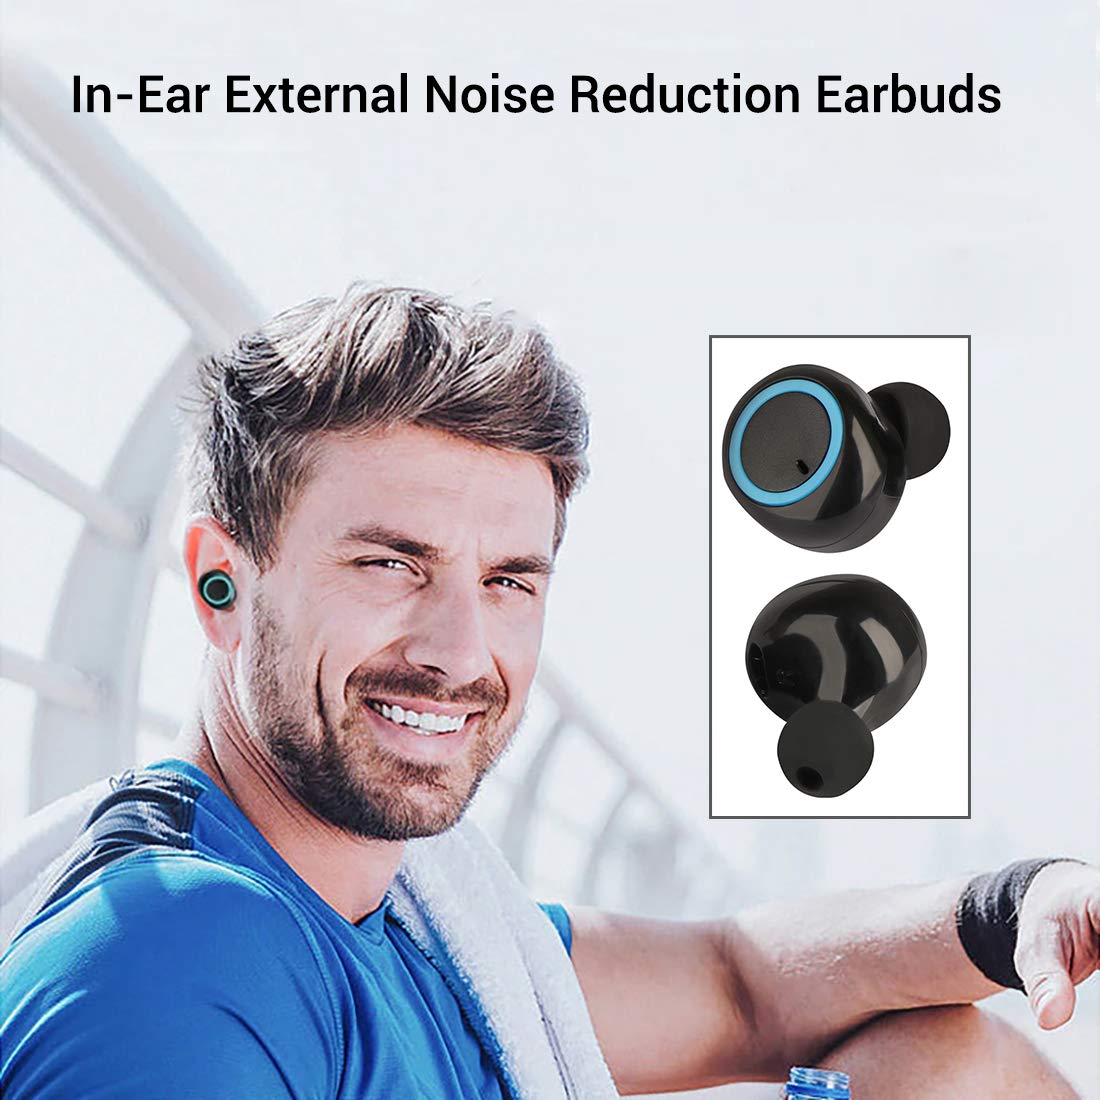 pTron Bassbuds in-Ear True Wireless Bluetooth Headphones (TWS